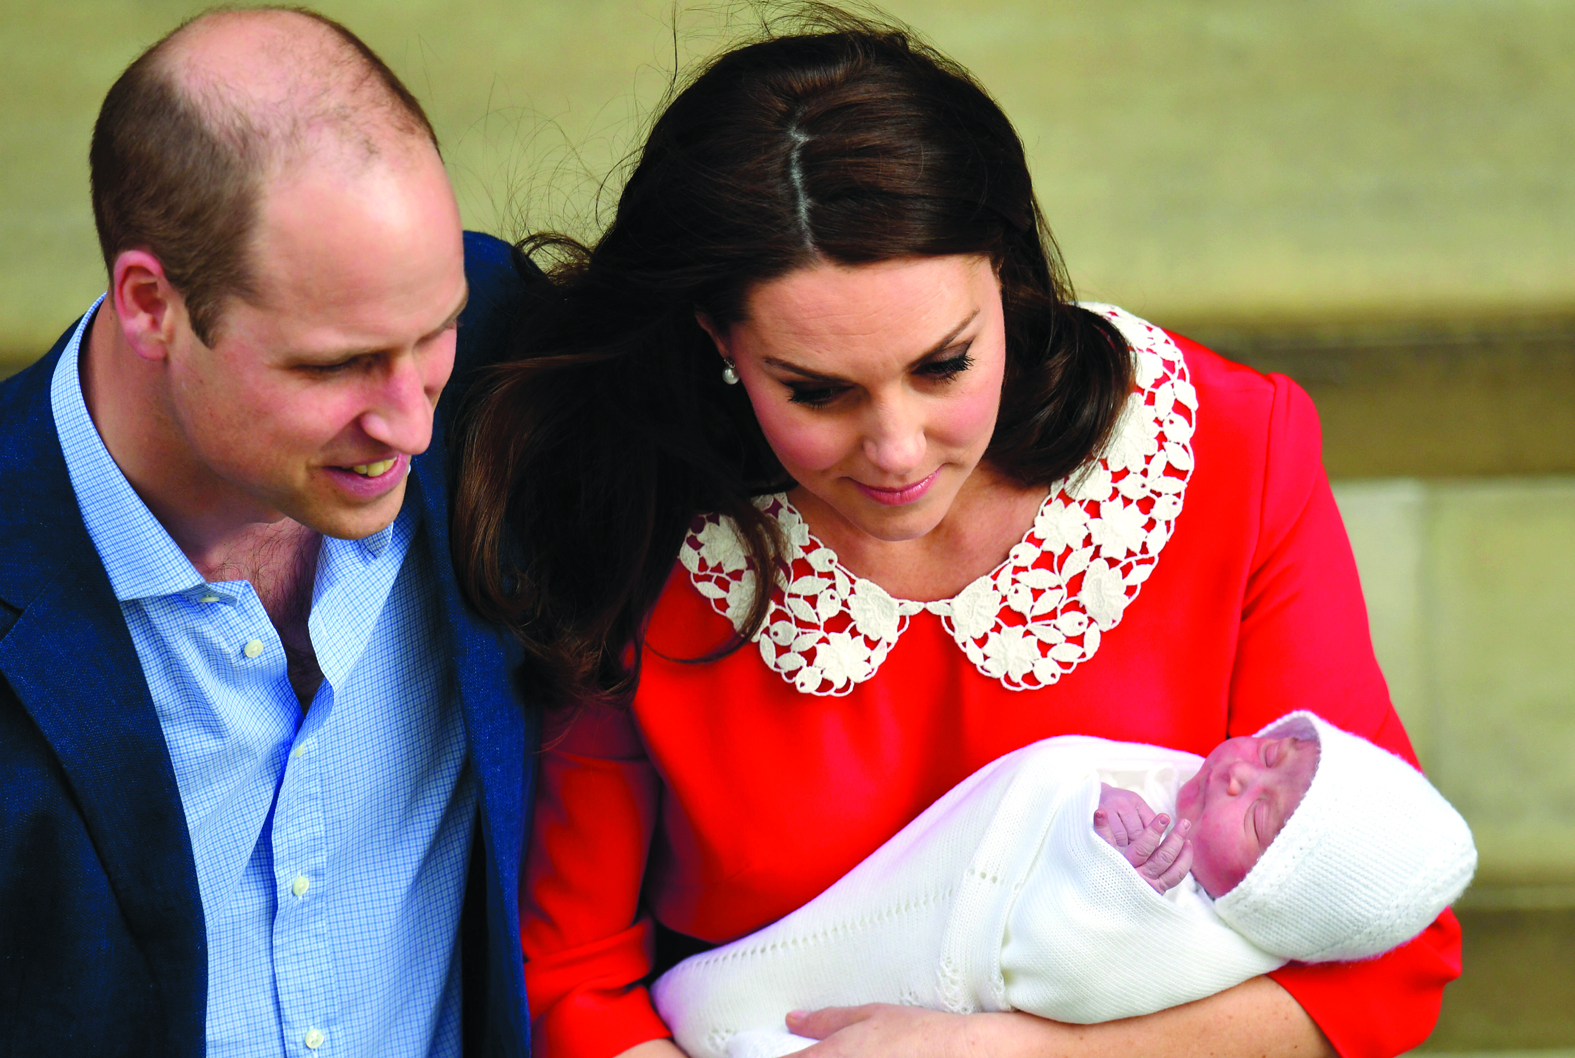 A forma caricata (e muito divertida) que um jornal inglês usou para anunciar o nascimento do filho de William e Kate